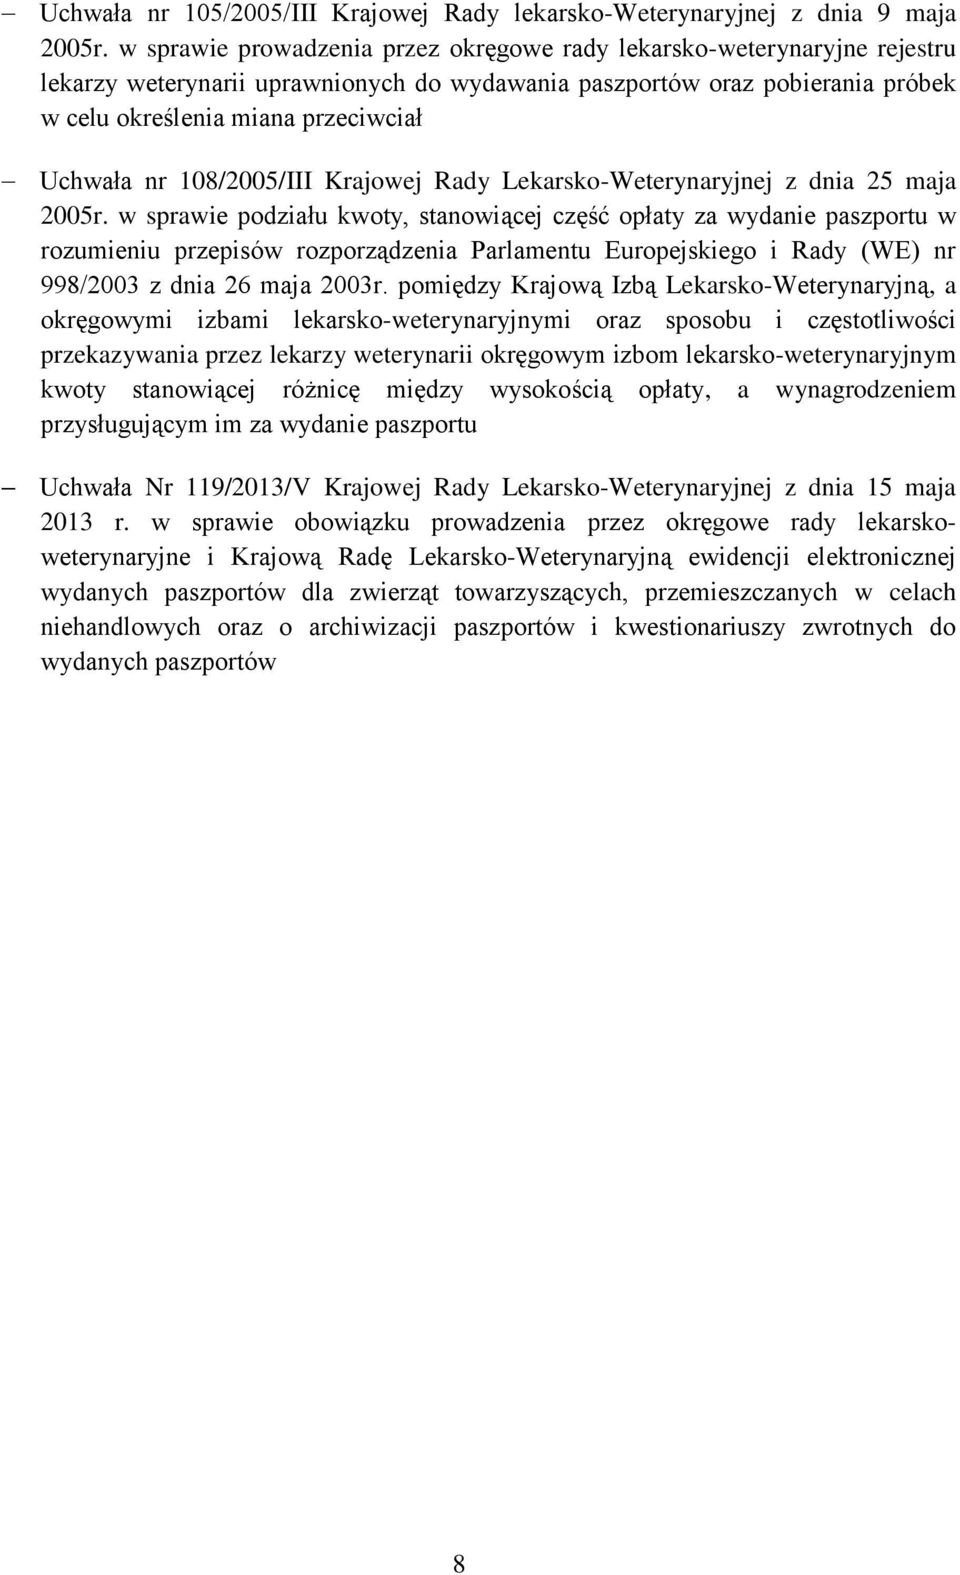 nr 108/2005/III Krajowej Rady Lekarsko-Weterynaryjnej z dnia 25 maja 2005r.